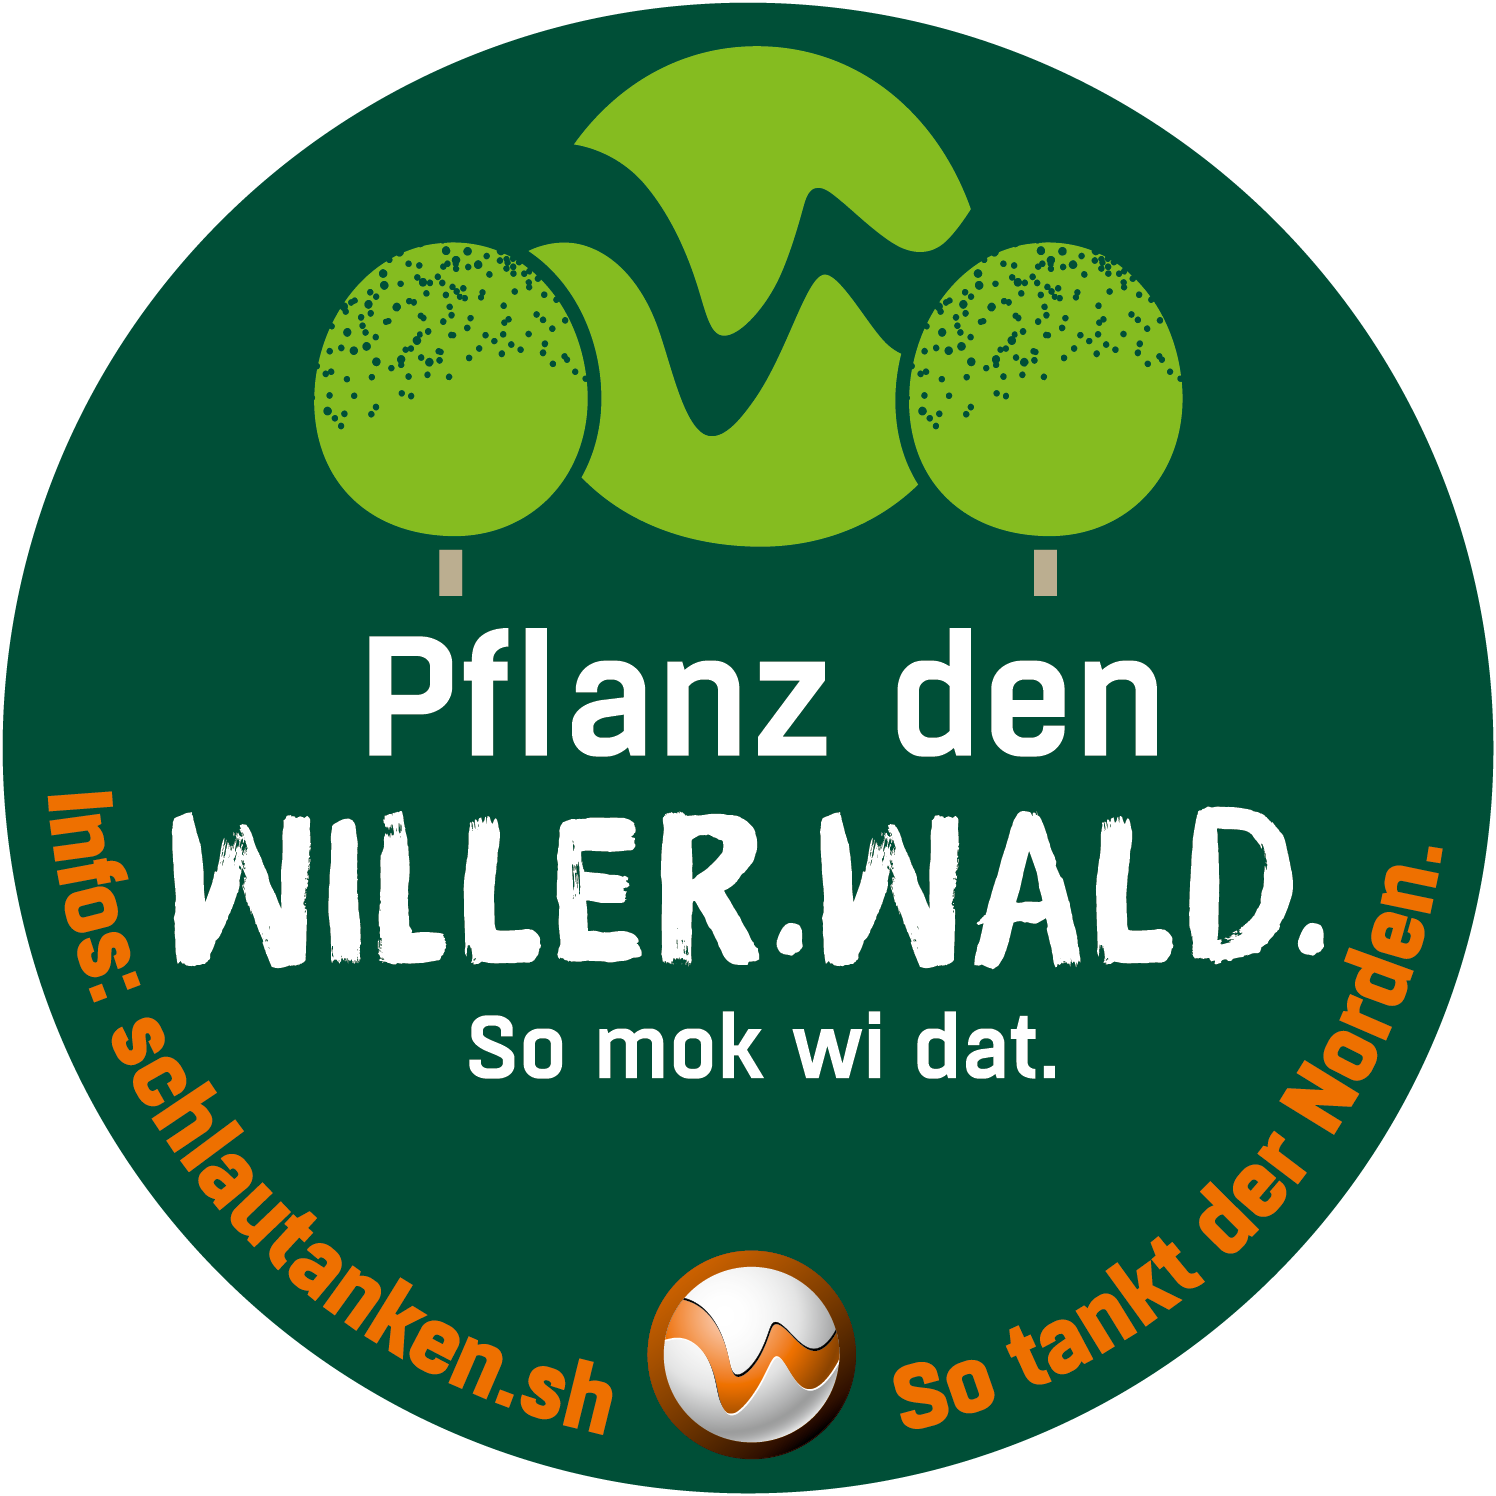 Willerwald